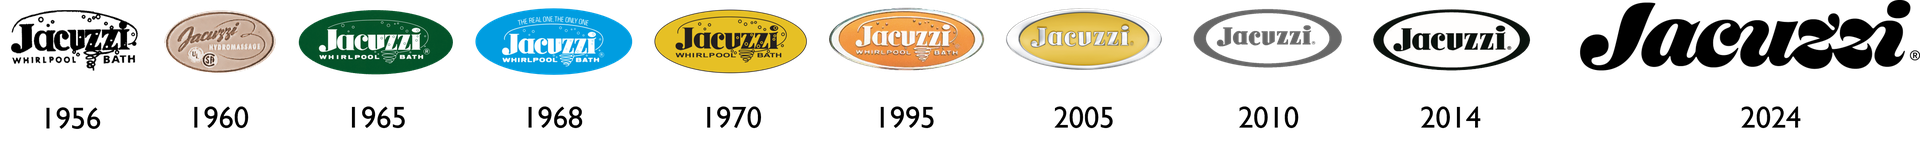 jacuzzi-logo-evolution.png